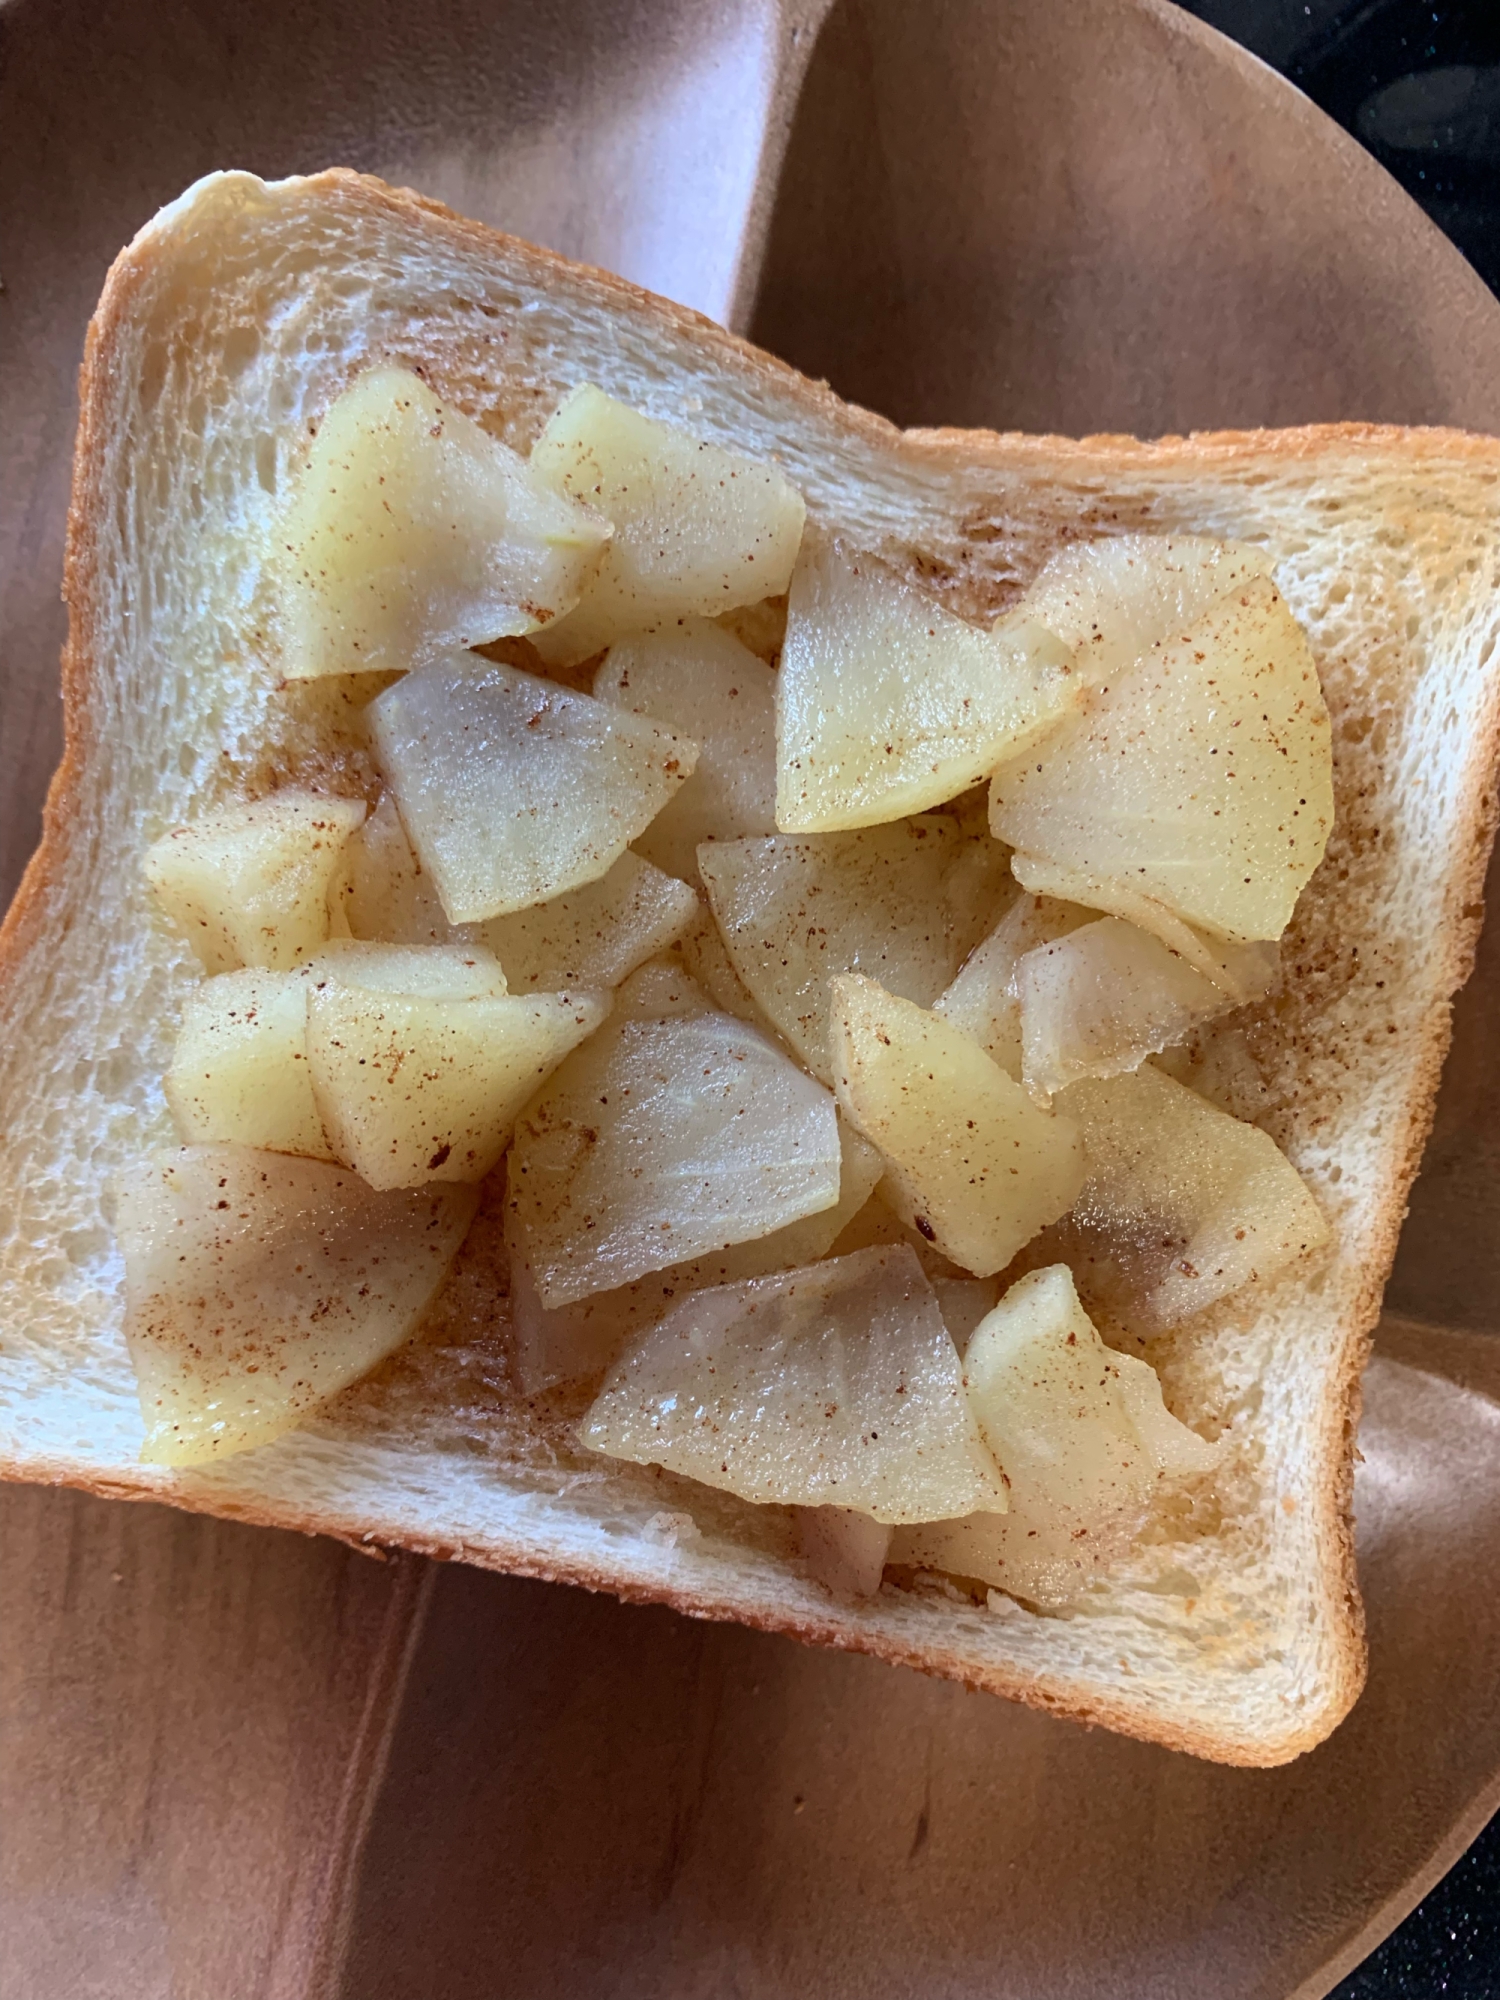 忙しい朝でも簡単なシナモンりんごパン